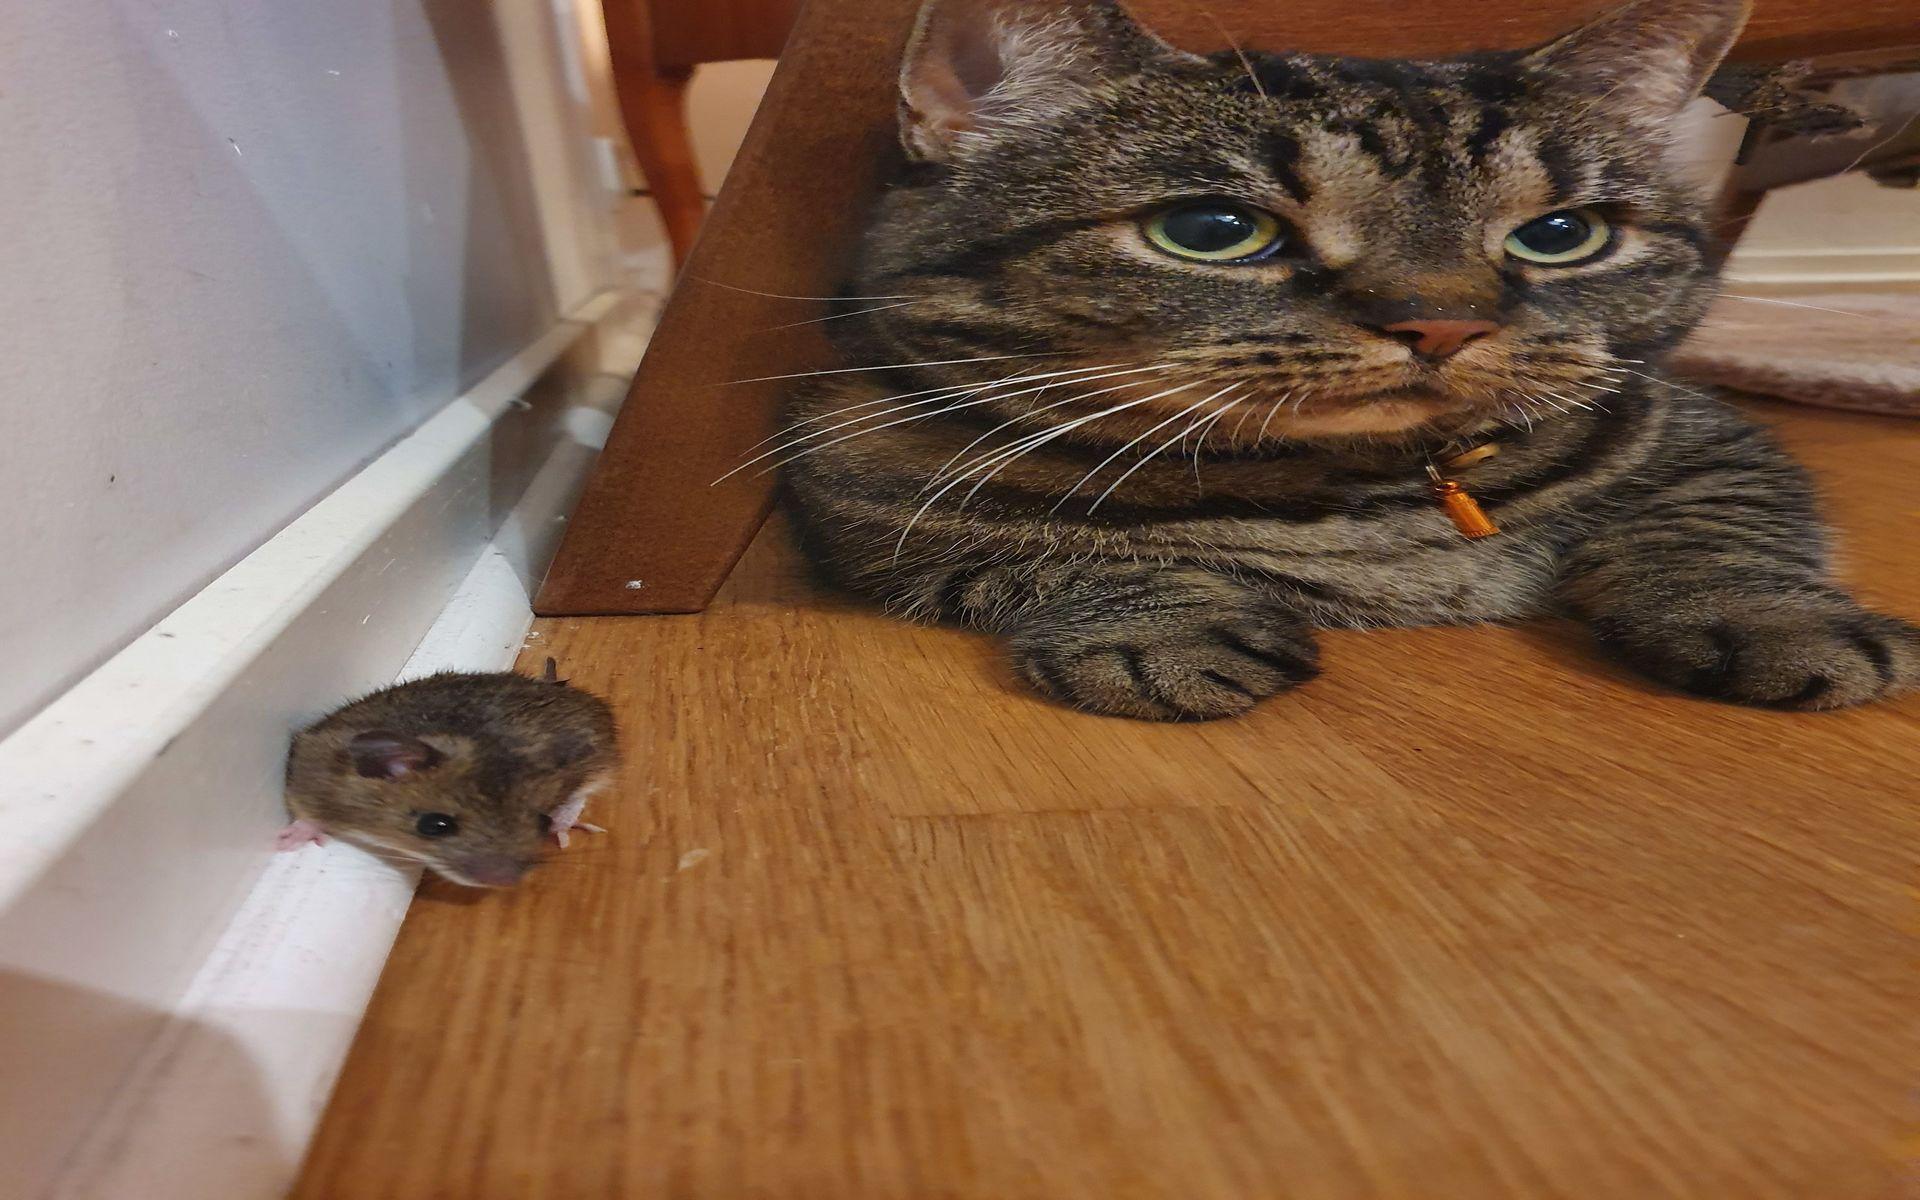 Här är vår katt dixie med en mus som hon blev kompis med en kväll. De var vänner en liten stund iallafall, skriver Peter, Josefin, Ville och Sam.